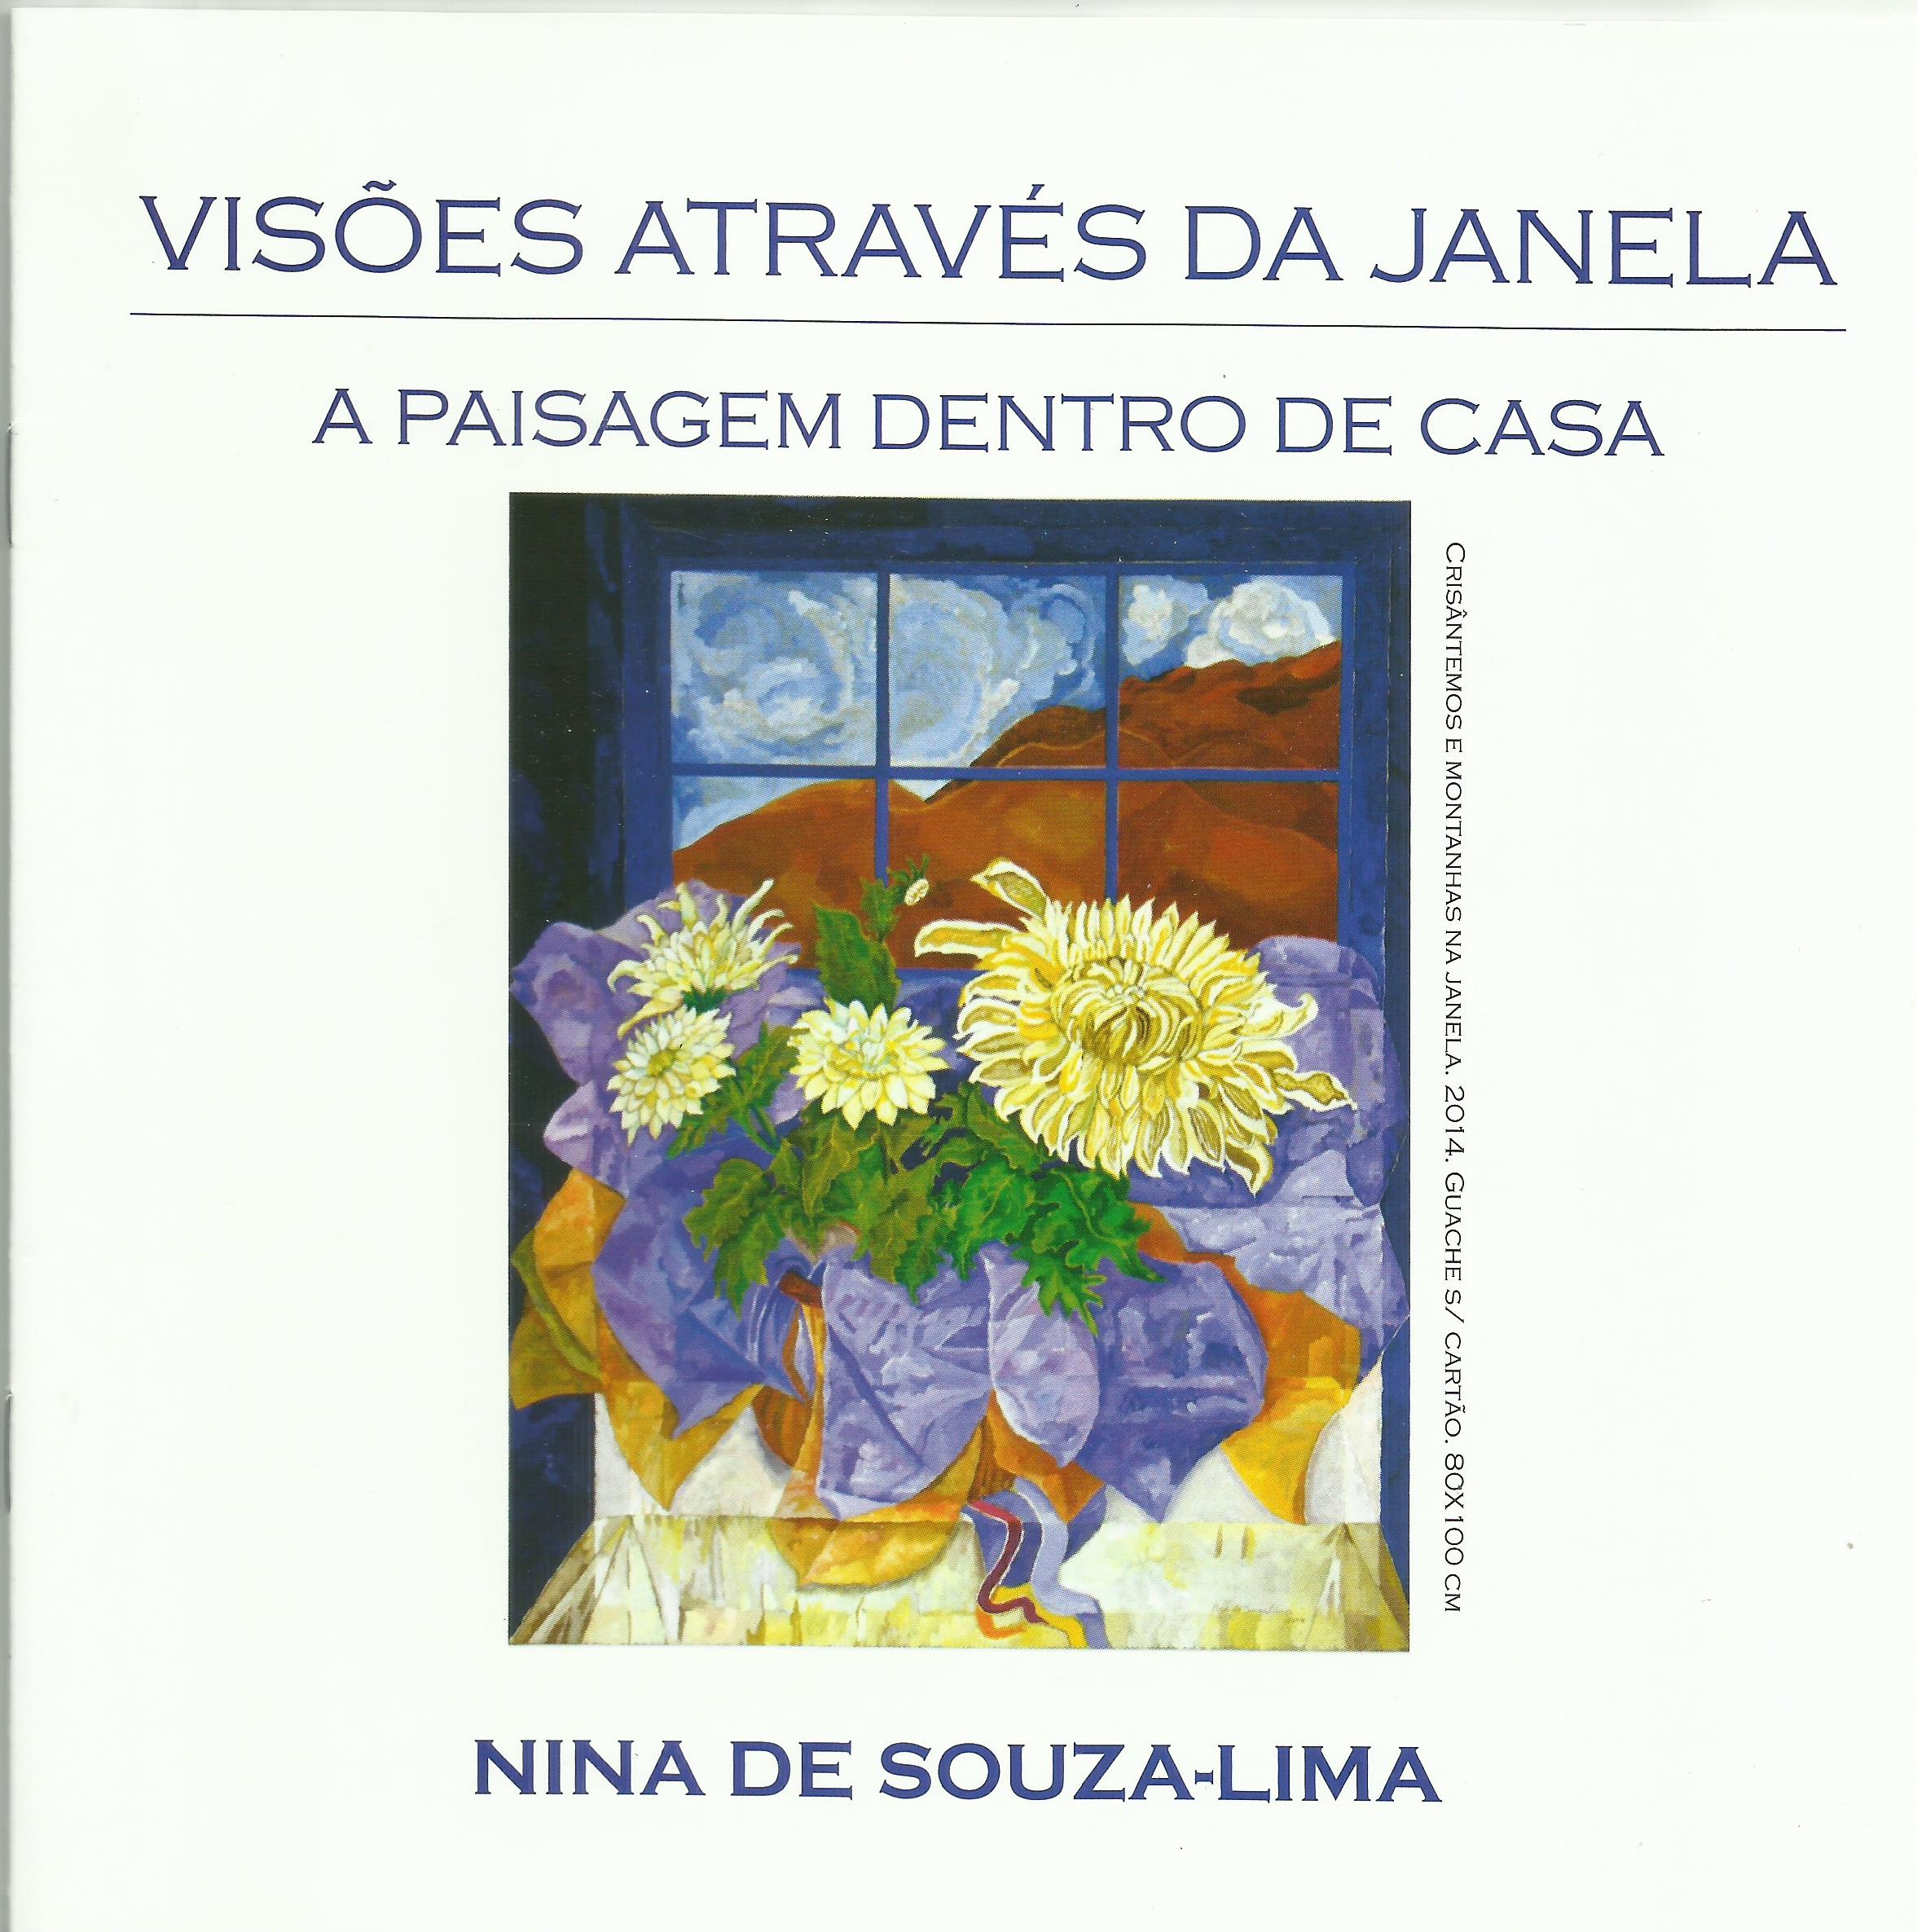 Catálogo da exposição Visões Através da Janela: a paisagem dentro de casa. Produzido pela curadoria do Espaço Cultural Fórum Lafayette, Belo Horizonte, MG. [2015]